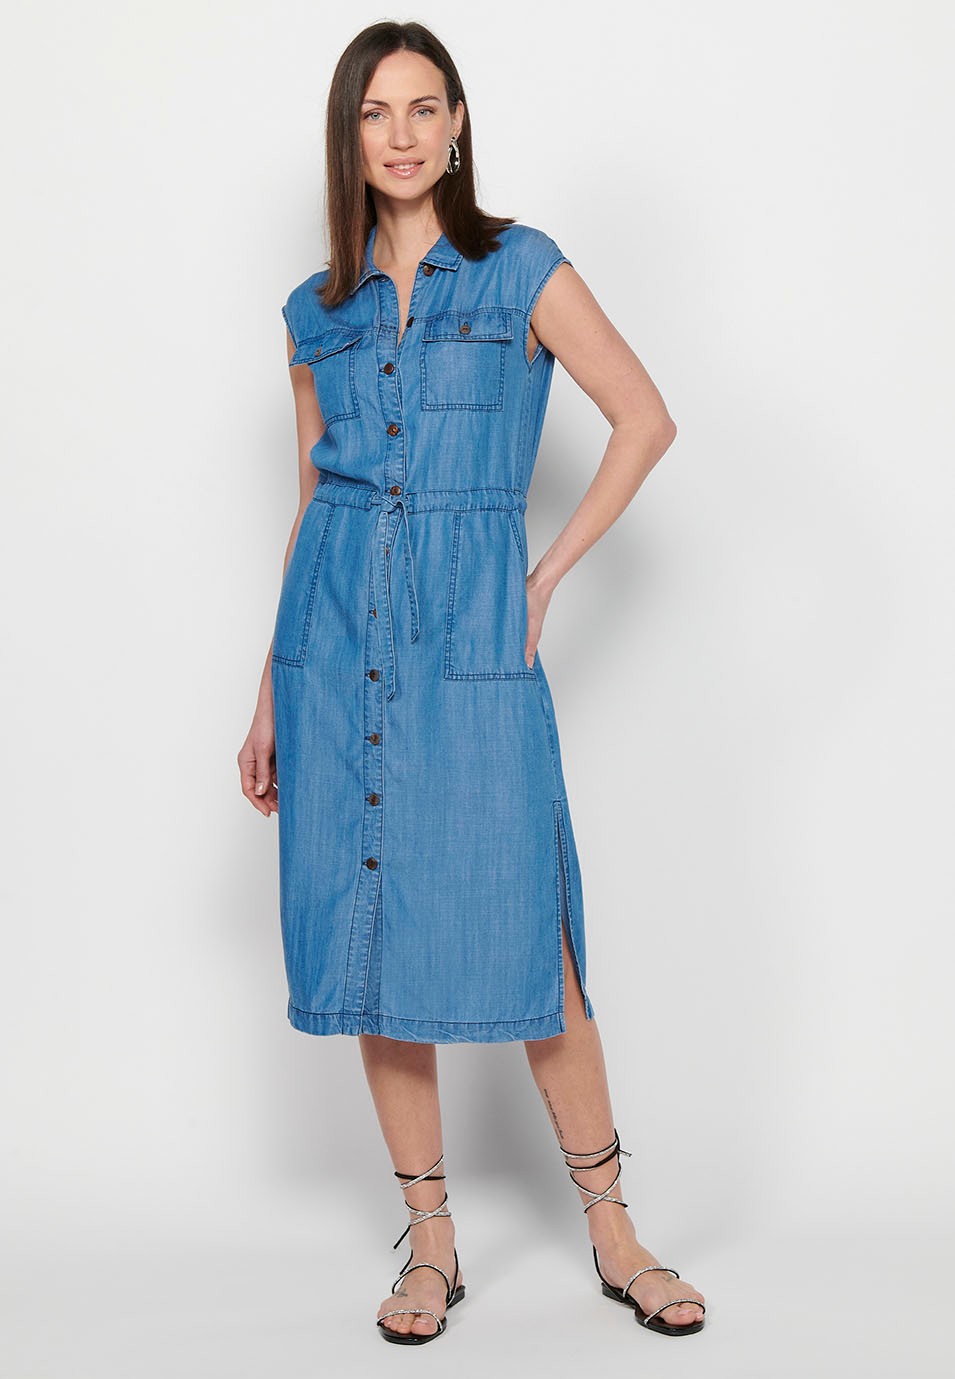 Ärmelloses, langes Damenkleid im Hemdstil mit verstellbarer Taille, Kordelzug und Knopfverschluss vorne in Blau